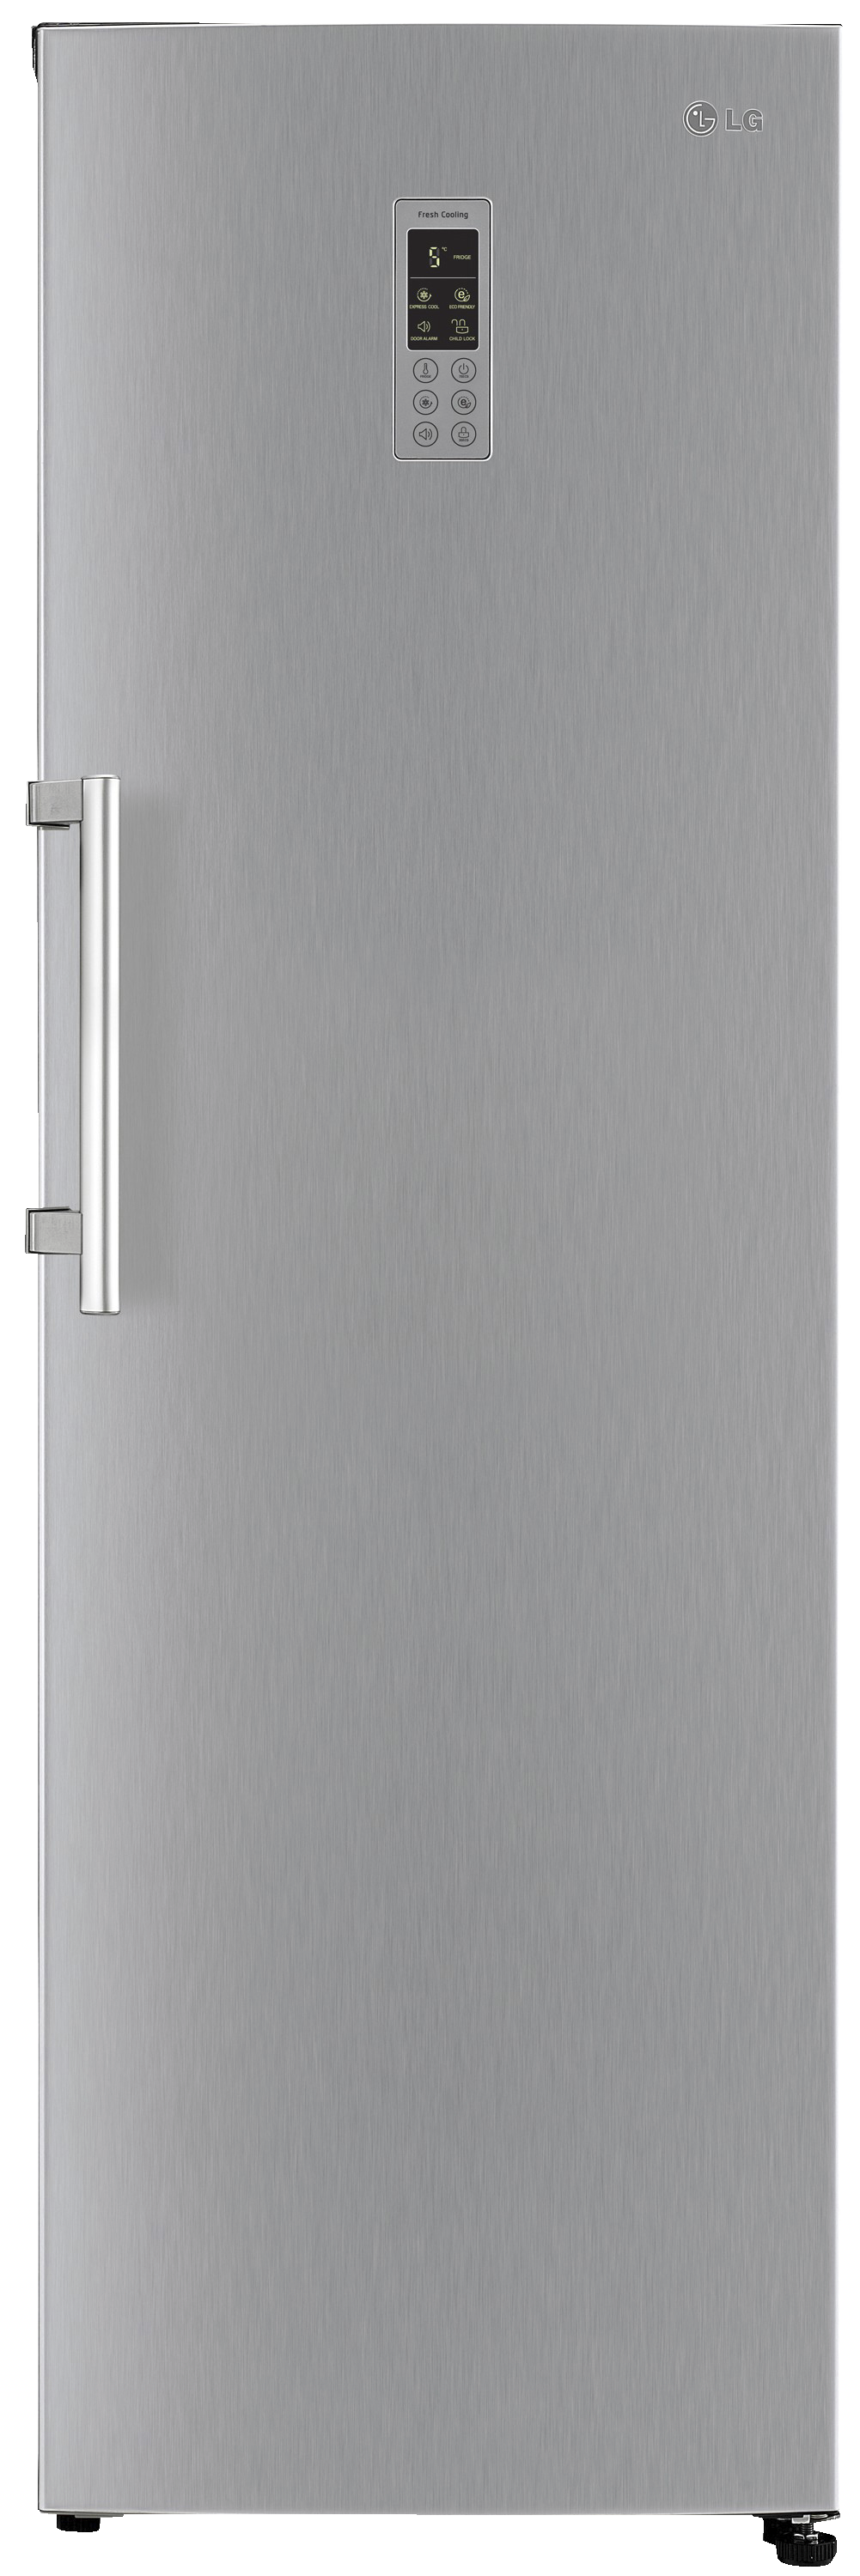 LG køleskab GL5241PZJZ - 185 cm - Køleskabe - Elgiganten